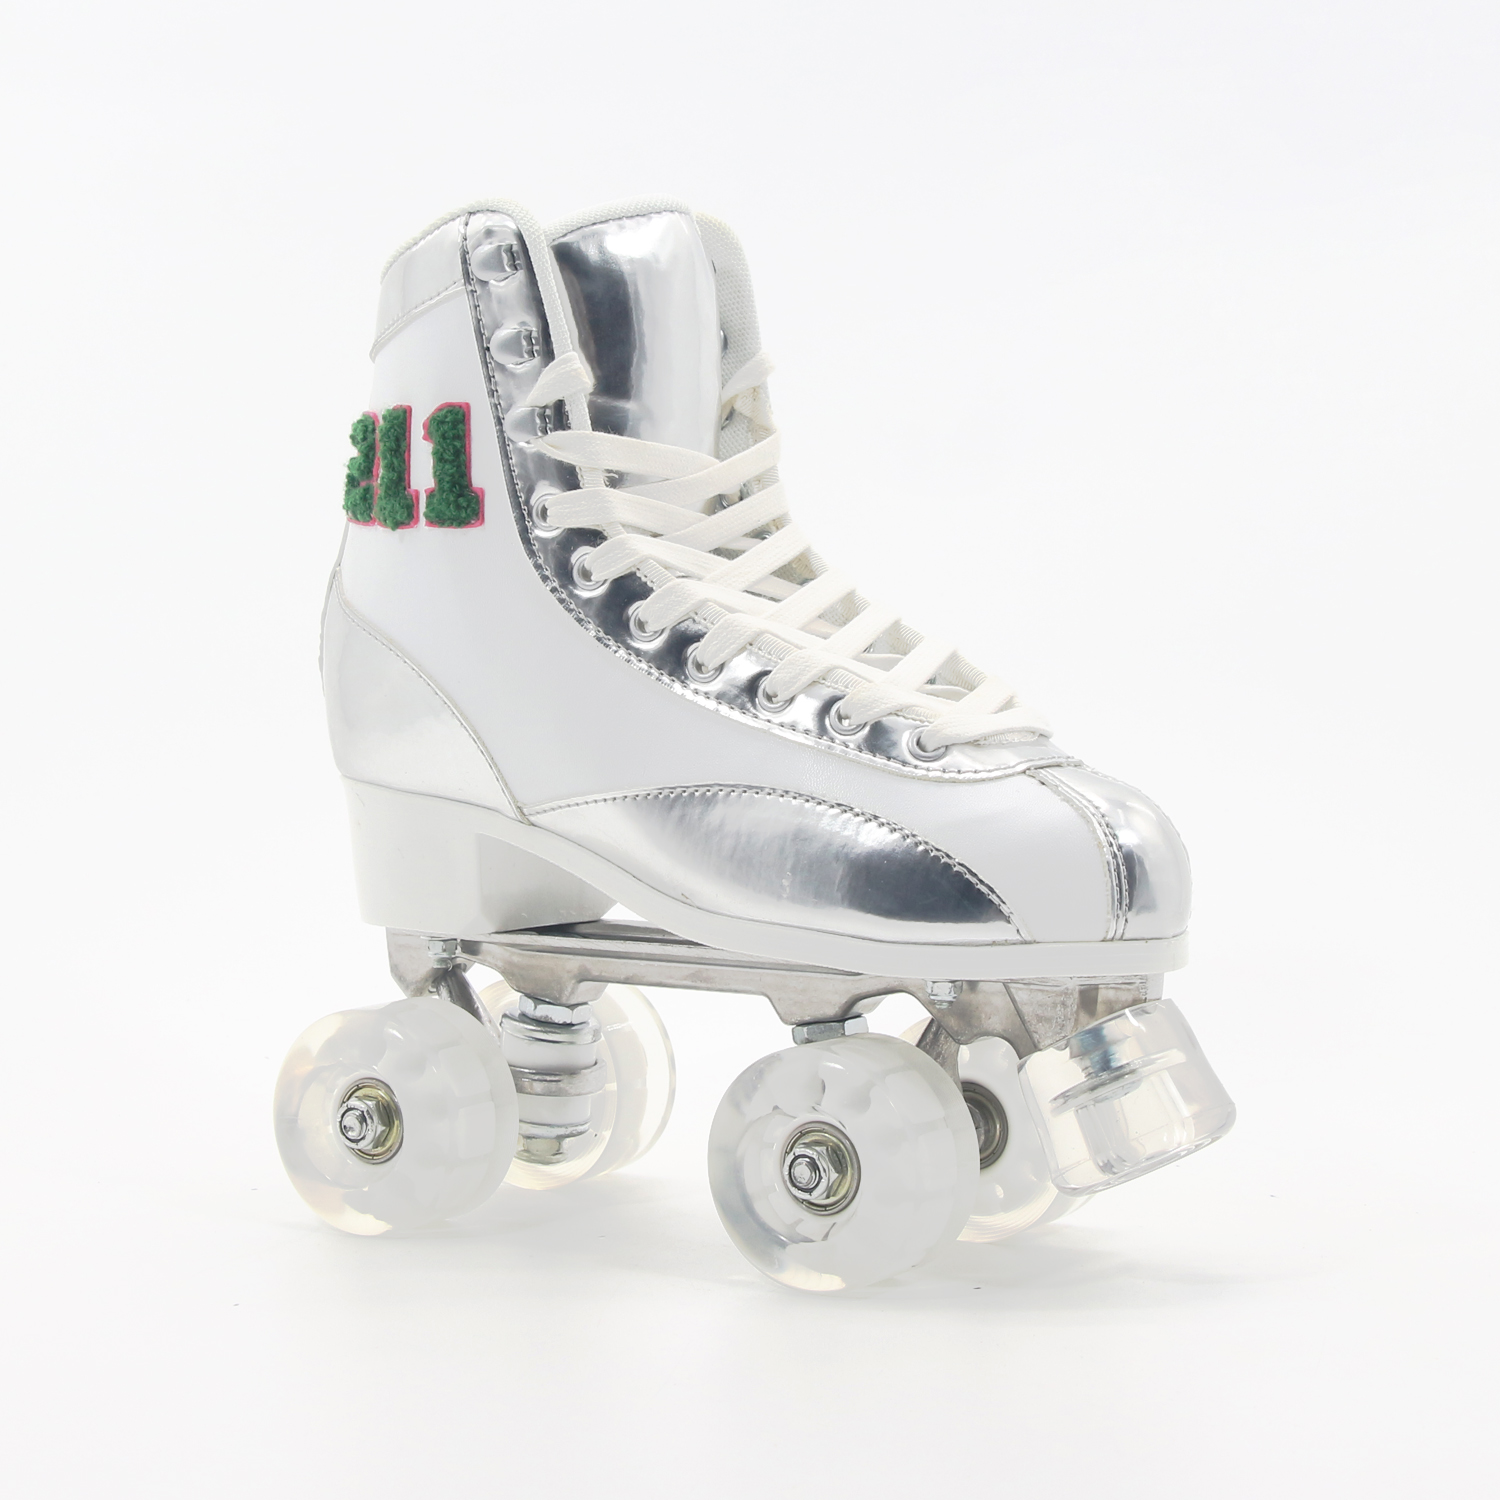 OEM 211 Bordado de alto grado Quad Disco Roller Skate